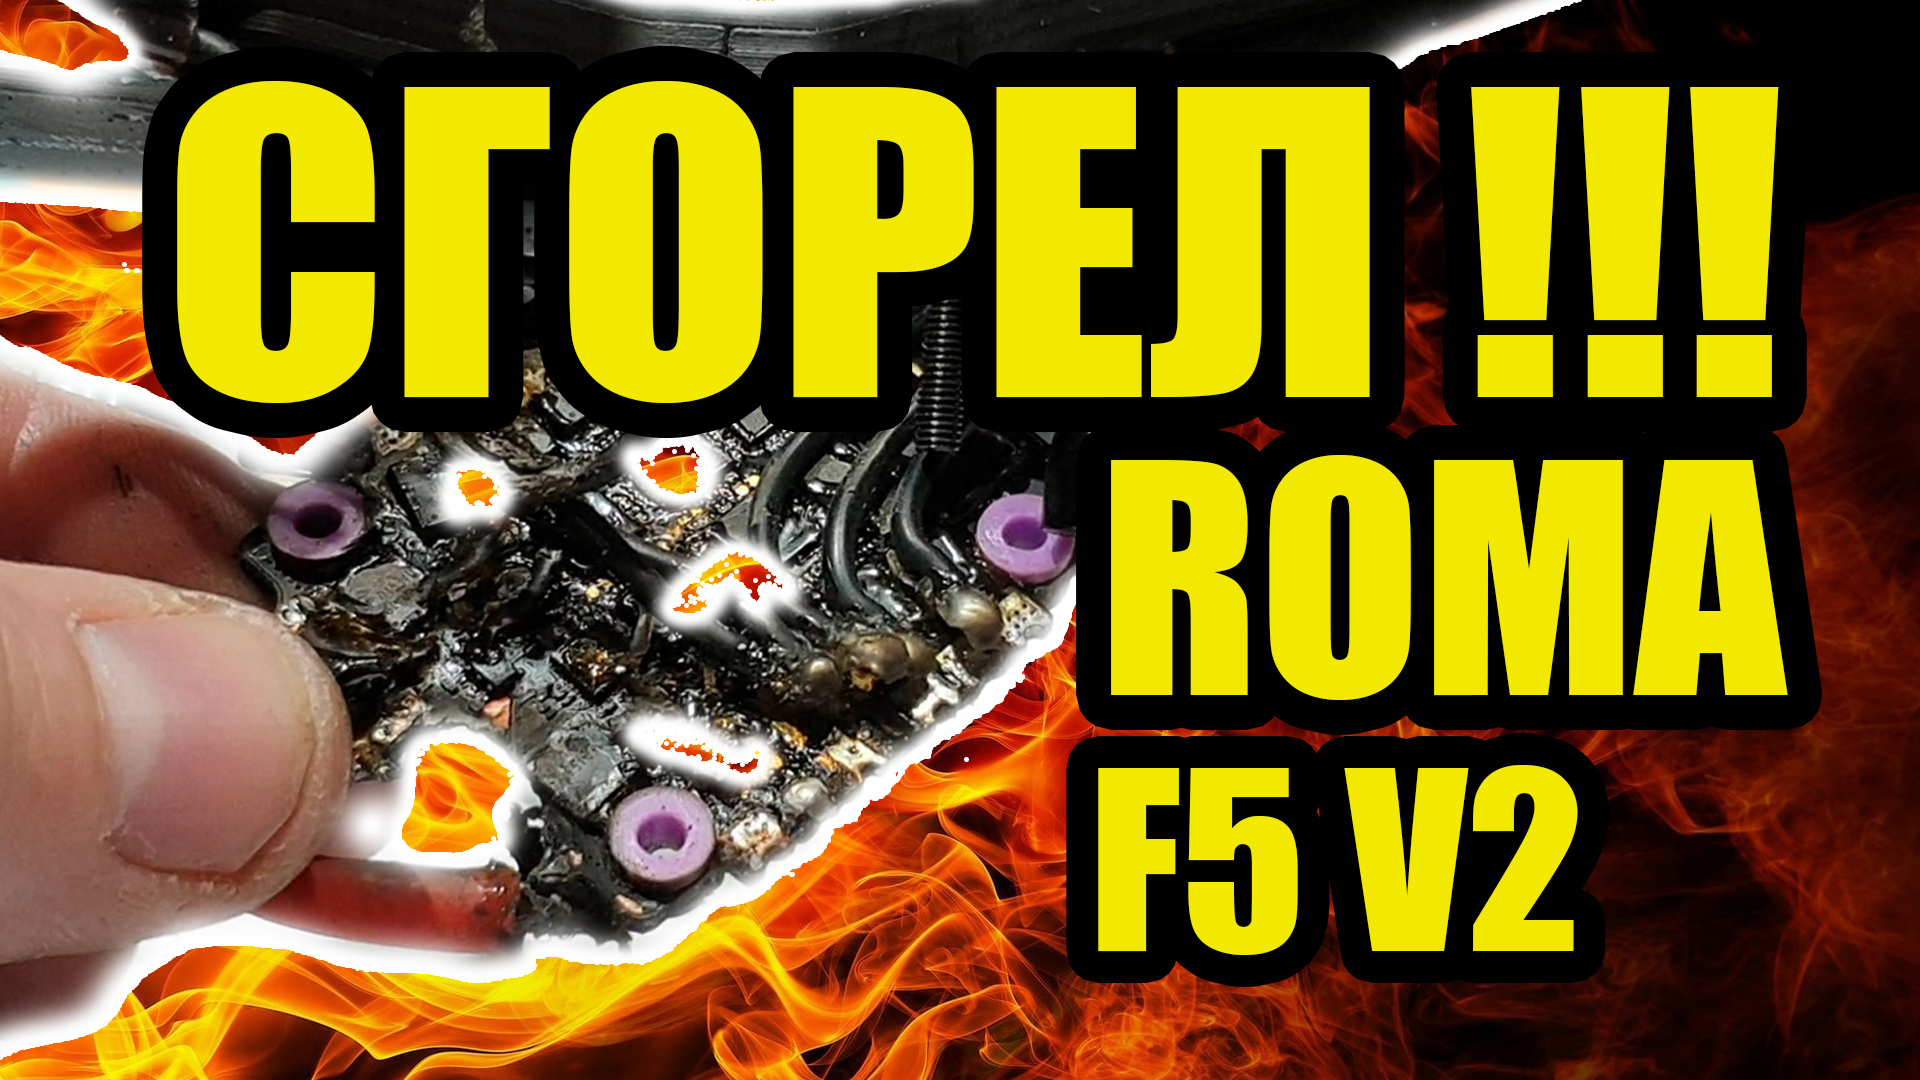 СГОРЕЛ ROMA F5 V2 !!! (дефектовка и ремонт)